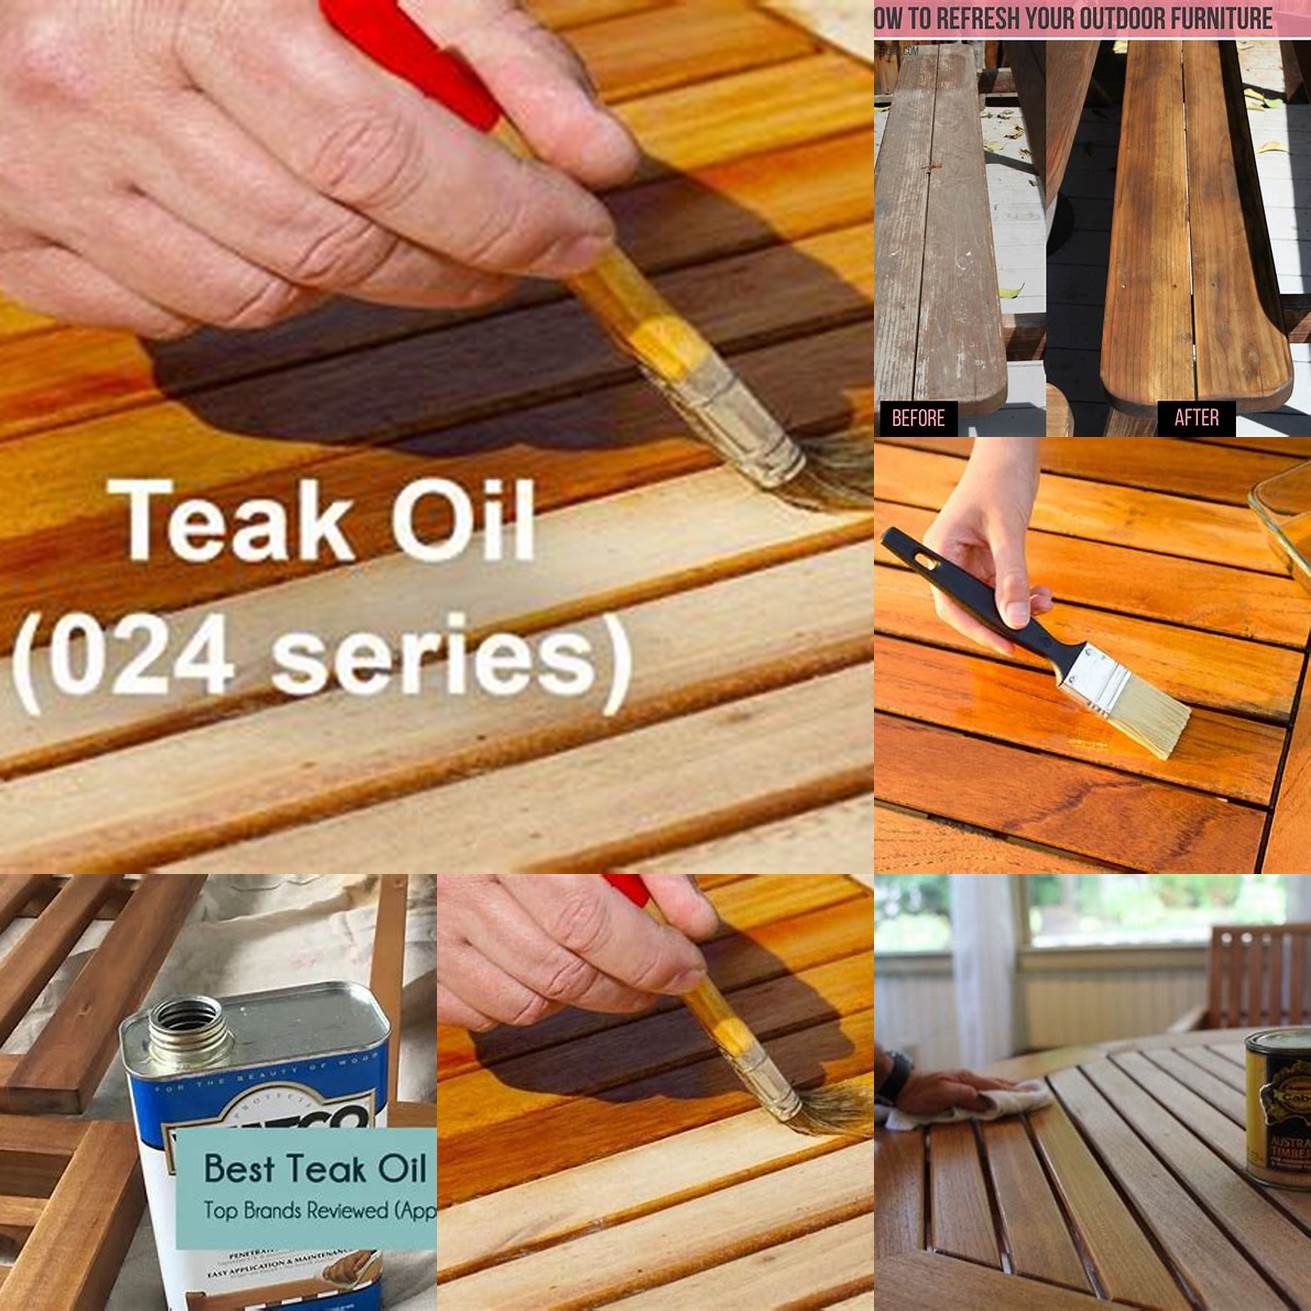 Applying teak oil or sealant